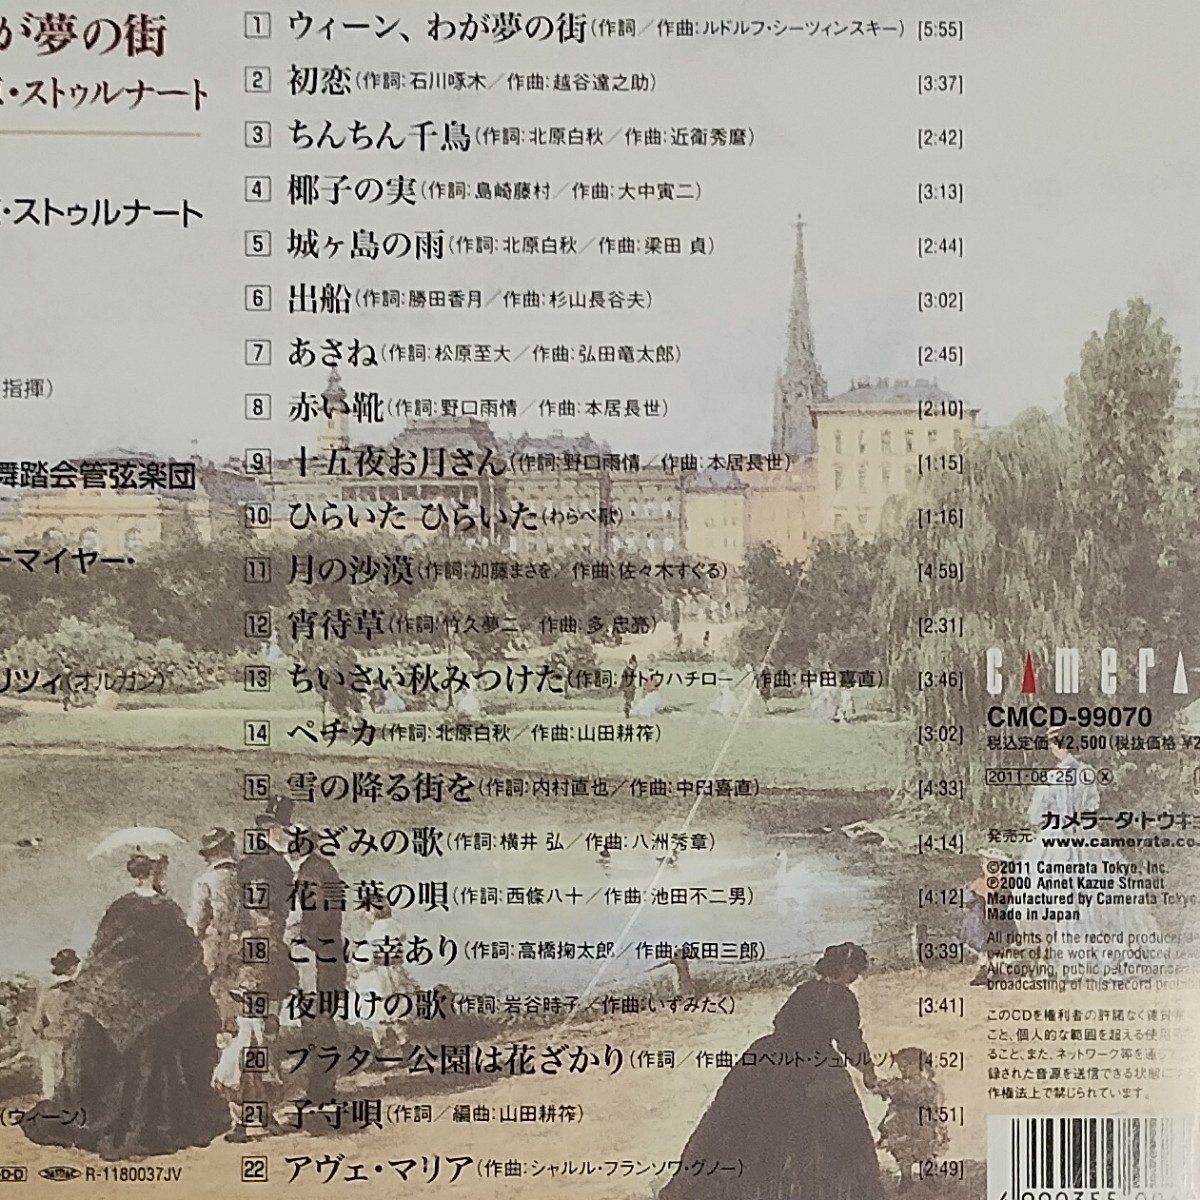 【送料無料】CD2個セット★アンネット★ウィーン、わが夢の街 など